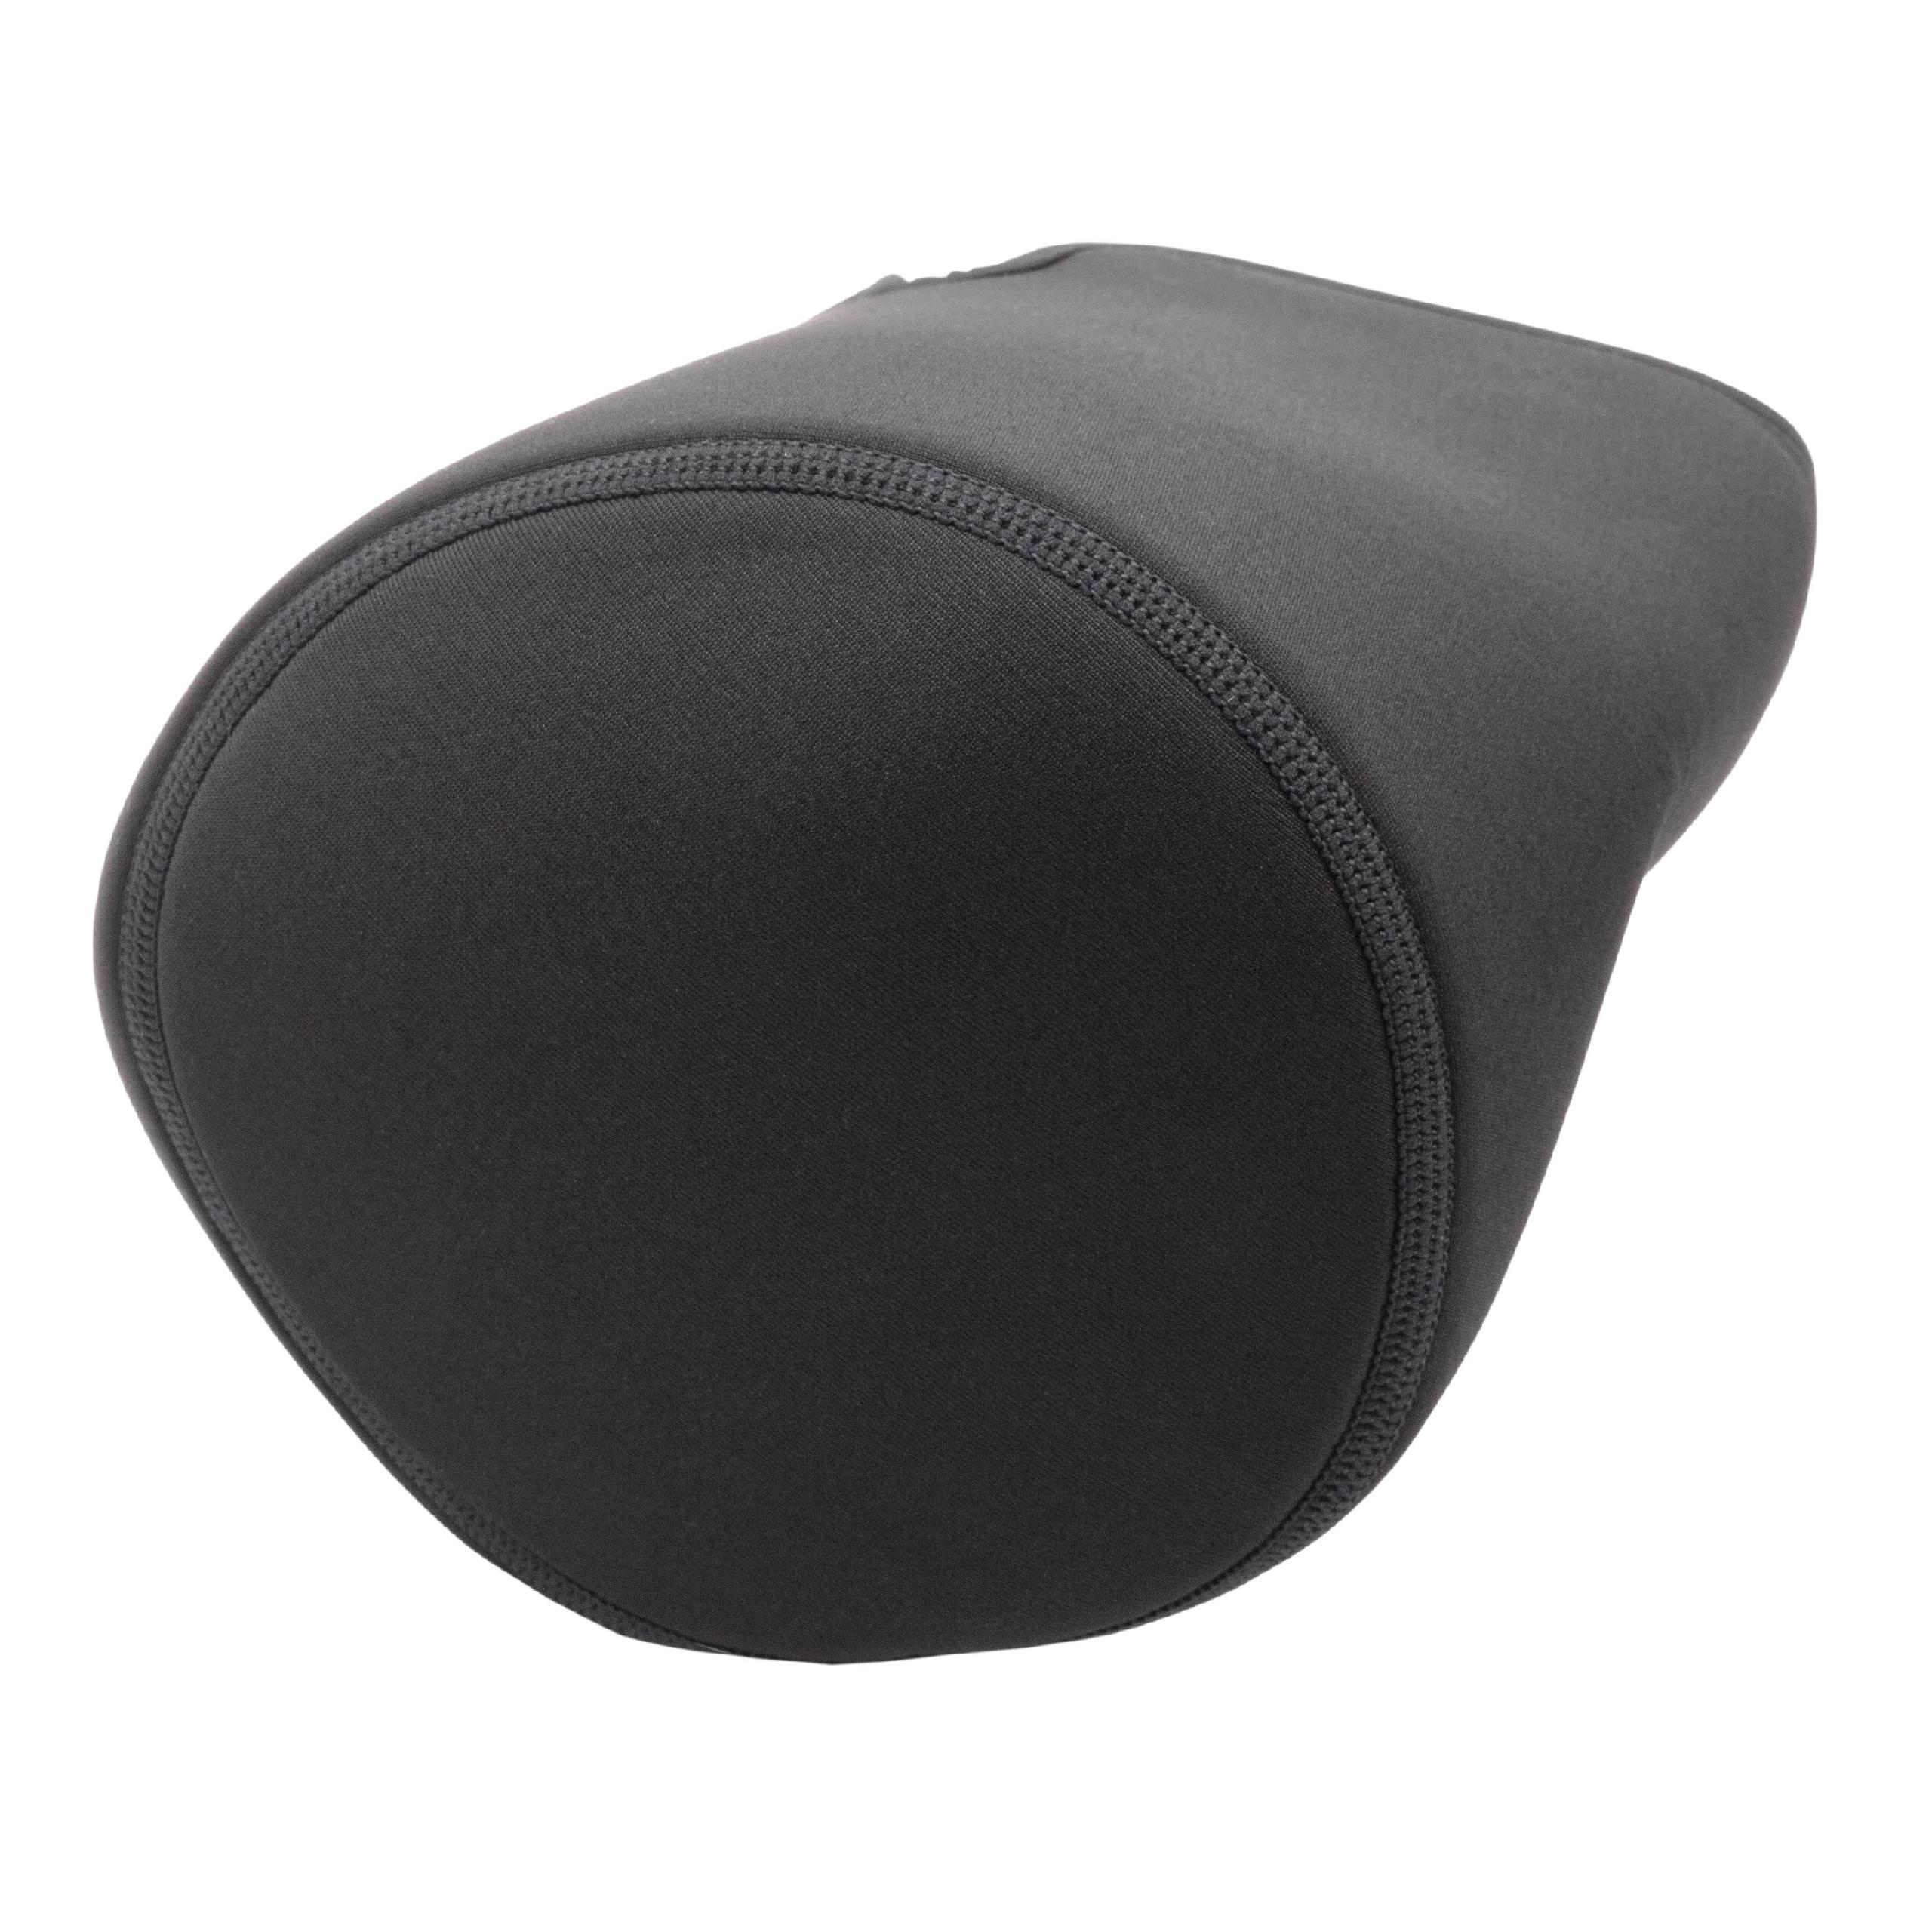 Case suitable for Apple HomePod Loudspeaker - neoprene, Black